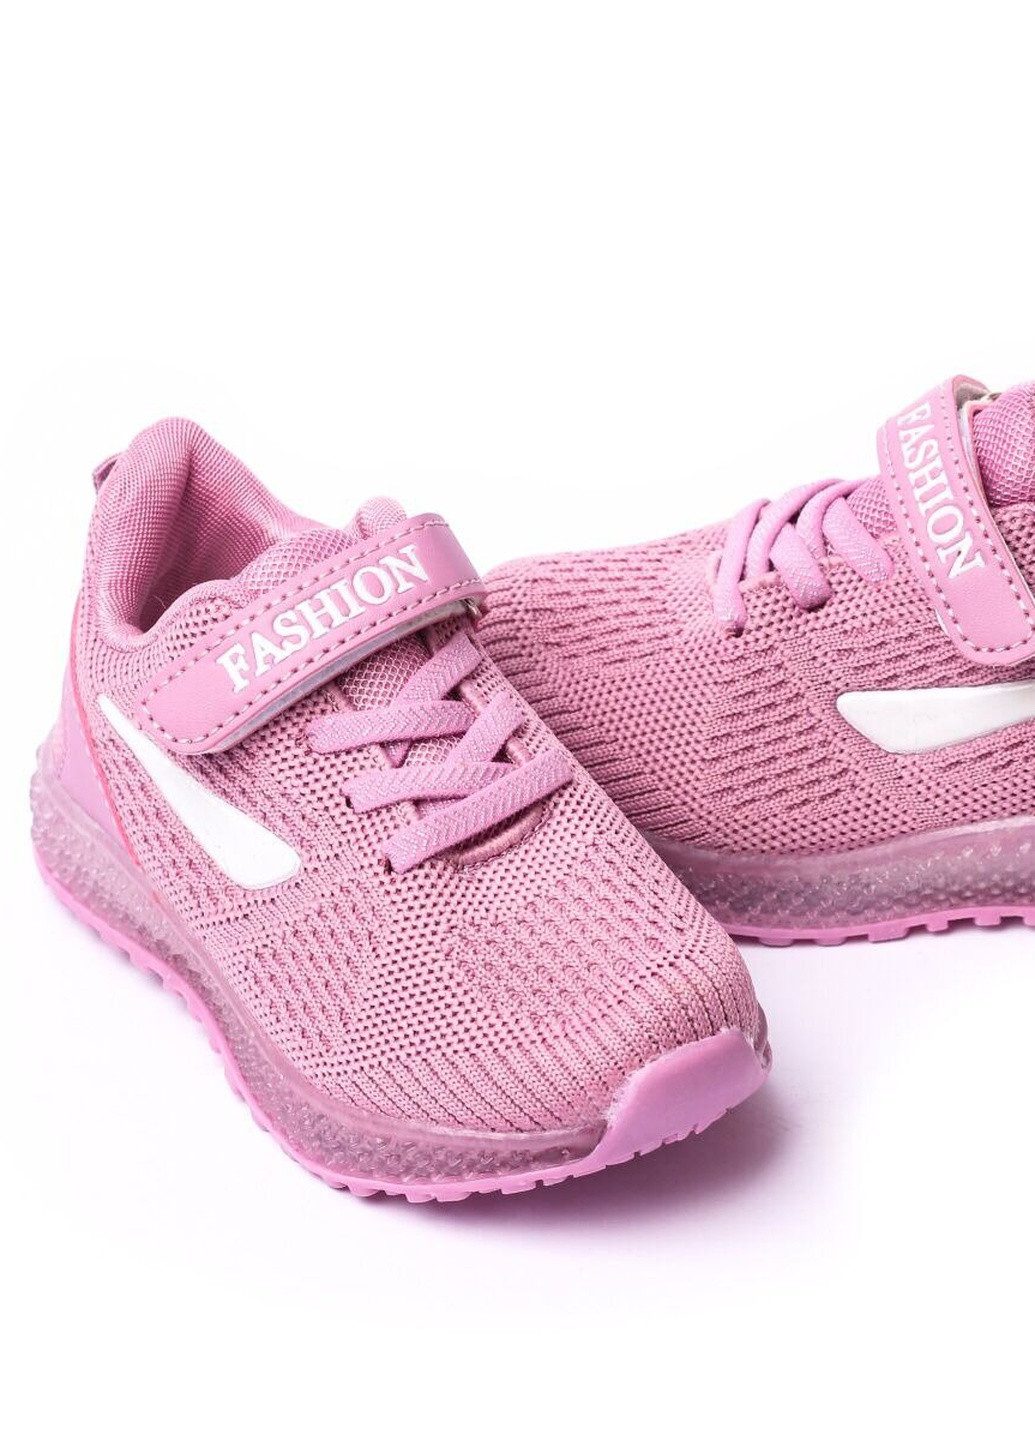 Фиолетовые демисезонные кроссовки детские, для девочки, 22 размер 2000903162414 Erra